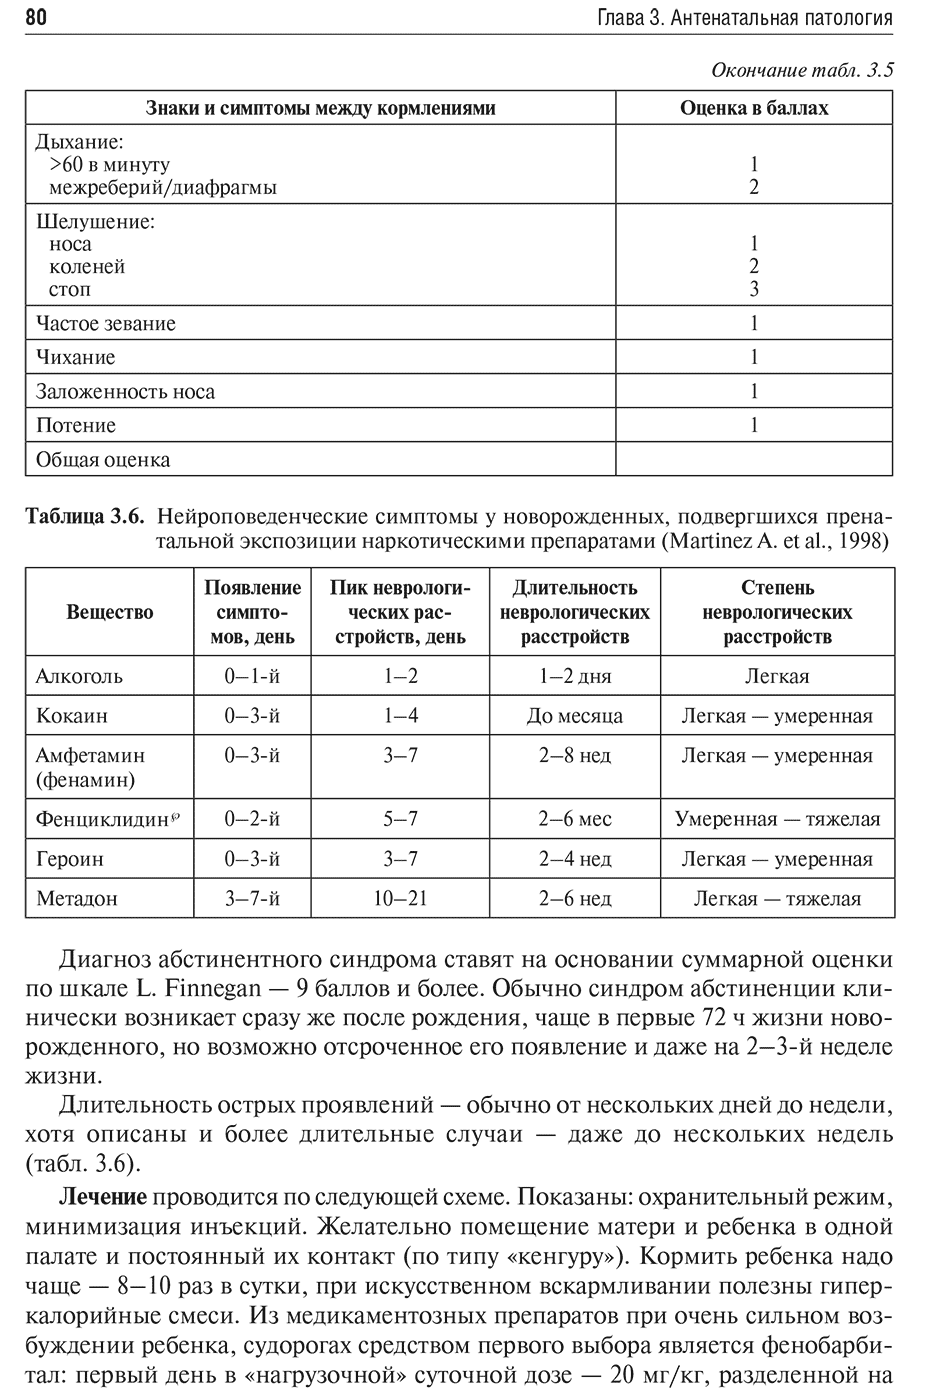 Таблица 3.6. Нейроповеденческие симптомы у новорожденных, подвергшихся пренатальной экспозиции наркотическими препаратами (Martinez A. et al., 1998)